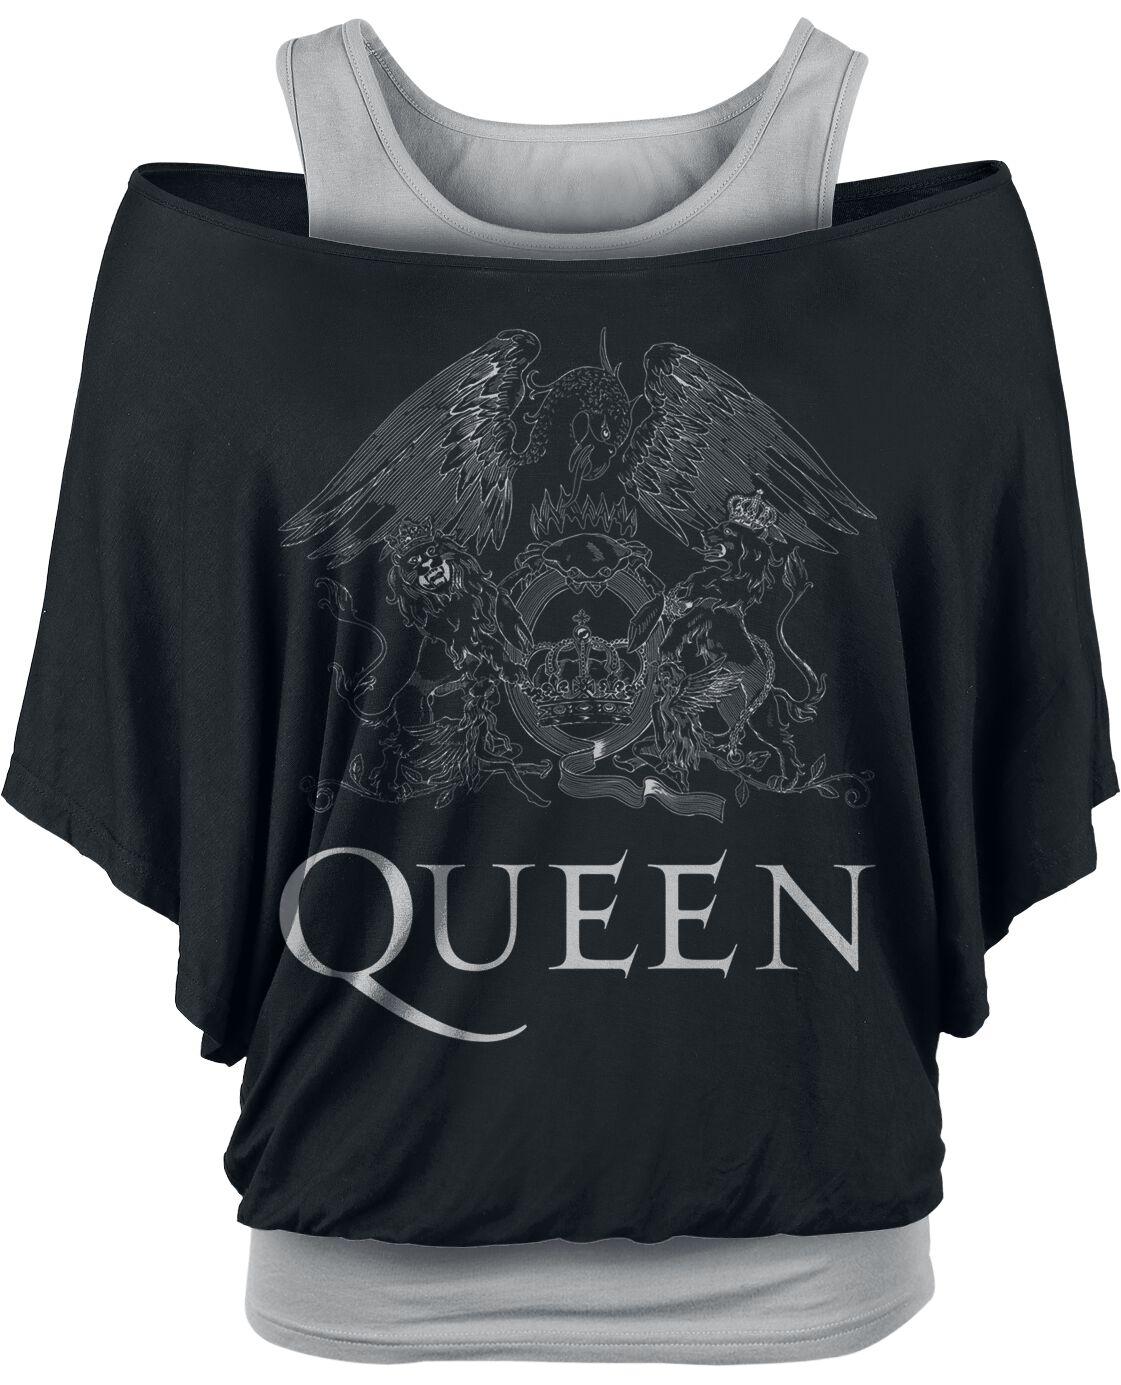 T-Shirt Manches courtes de Queen - Crest Logo - S à XXL - pour Femme - noir/gris